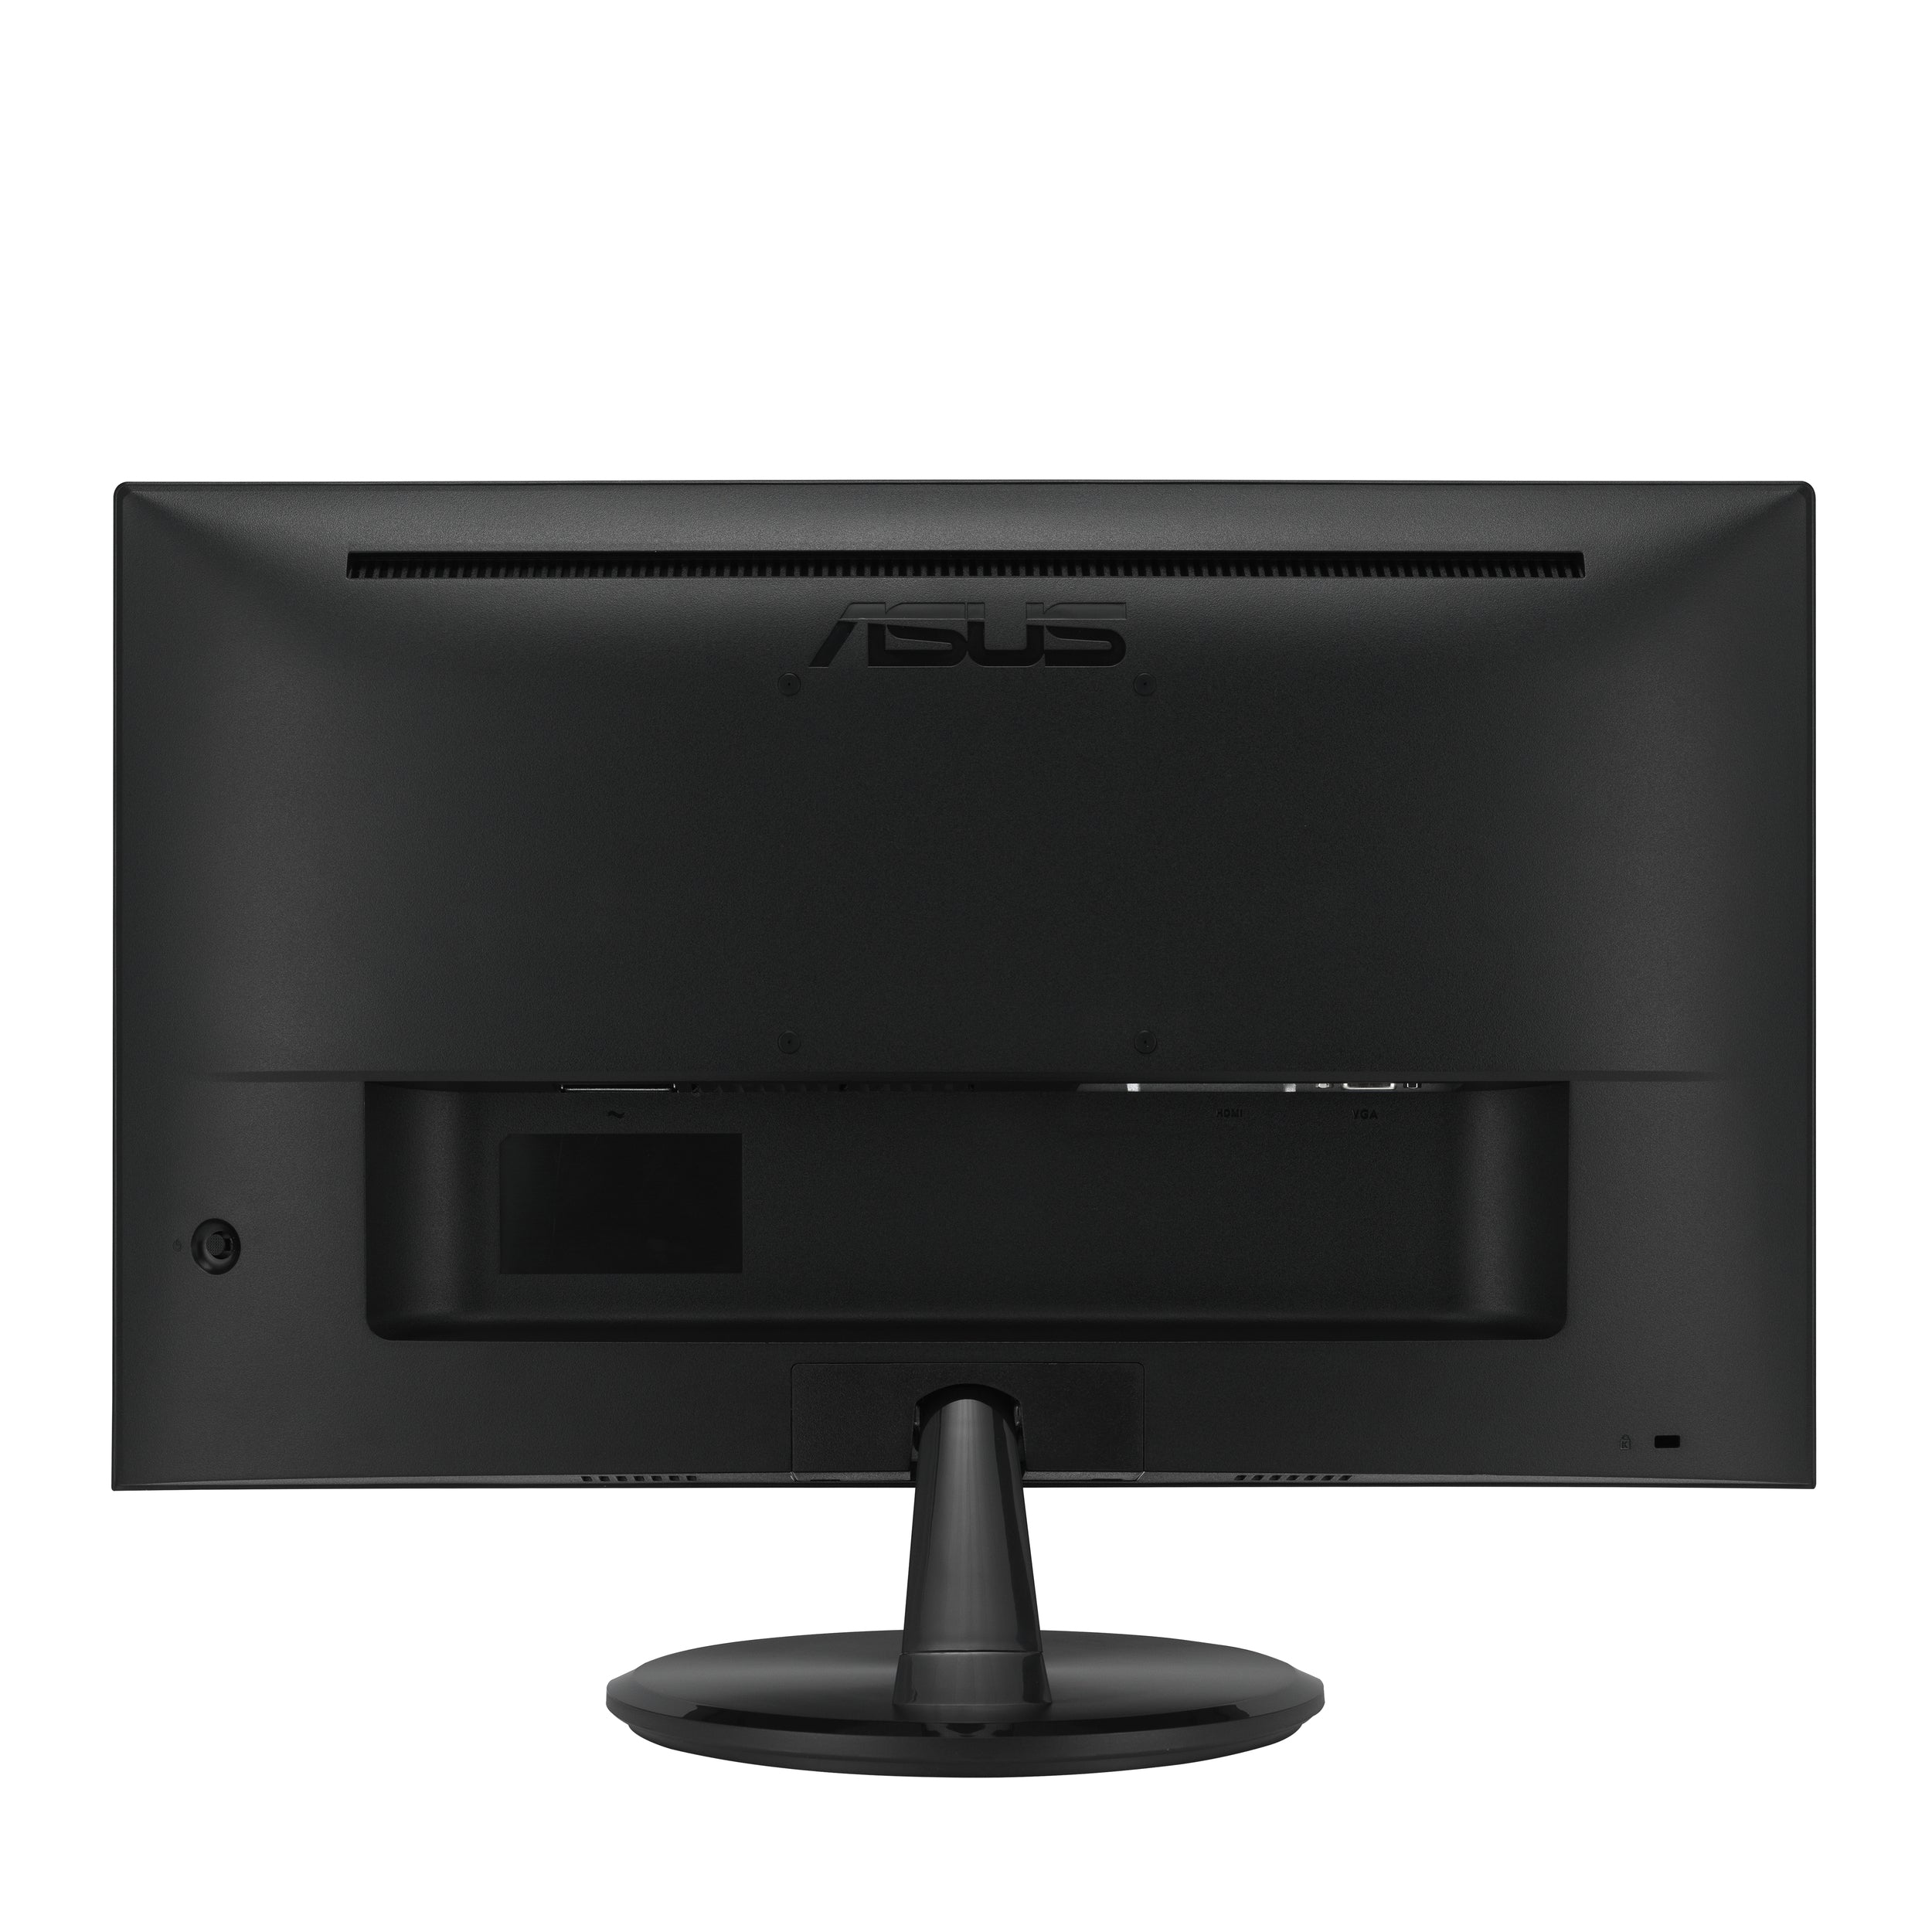 Monitor Asus Vp227He 21.5" Fhd 1920X1080 /Hdmi /Vga/75Hz/